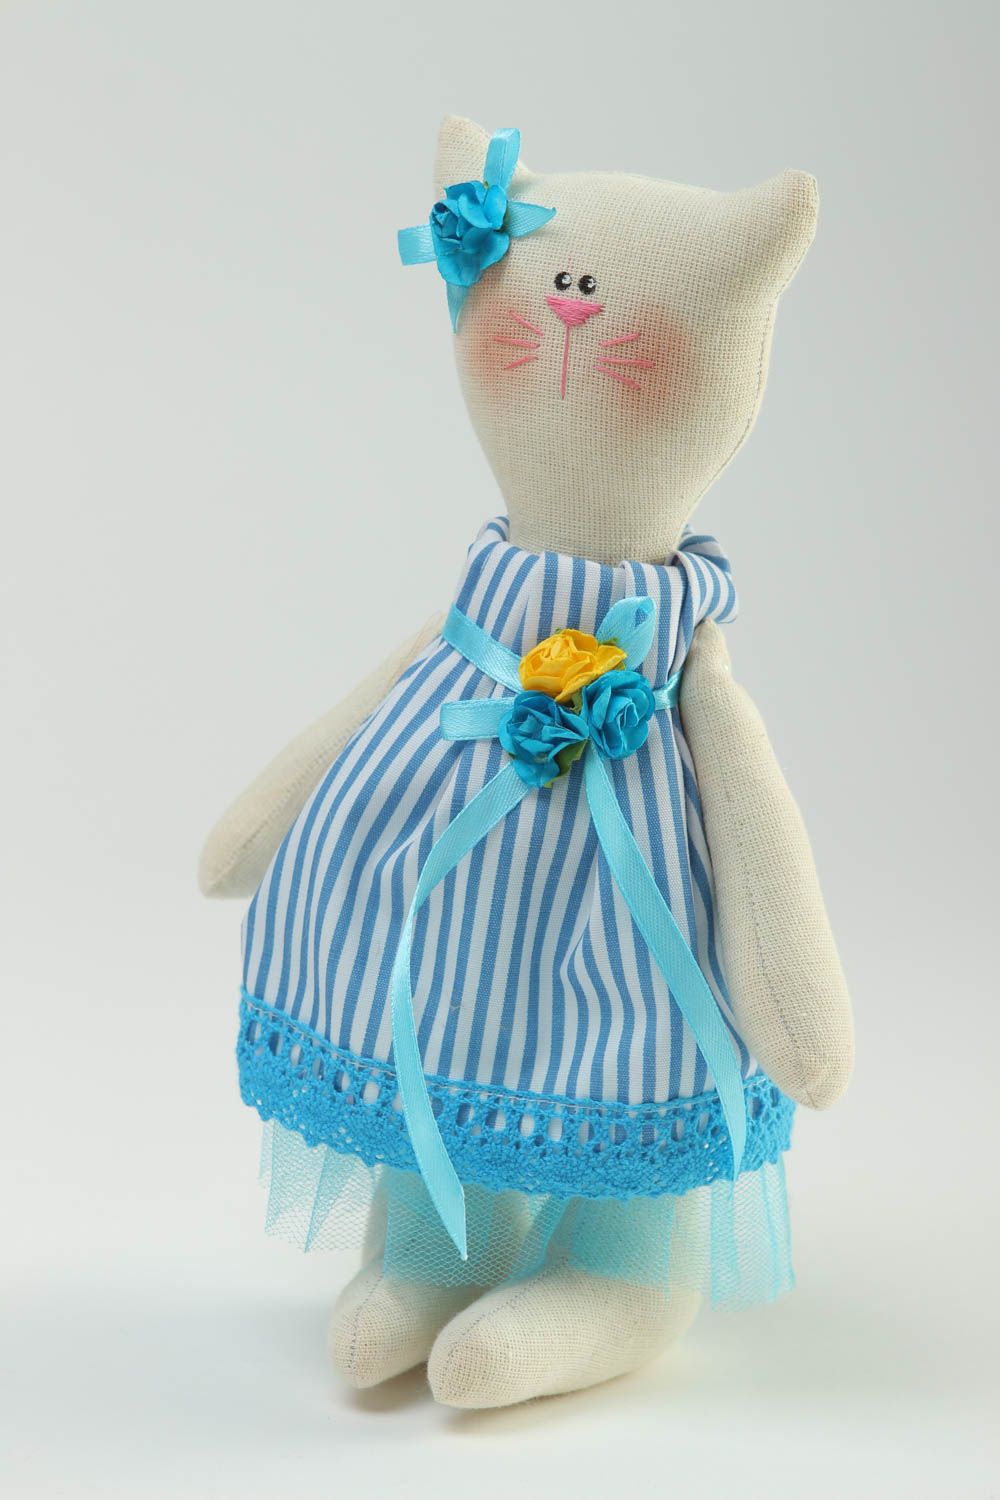 Игрушка ручной работы игрушка кошка оригинальная игрушка в полосатом платье фото 2